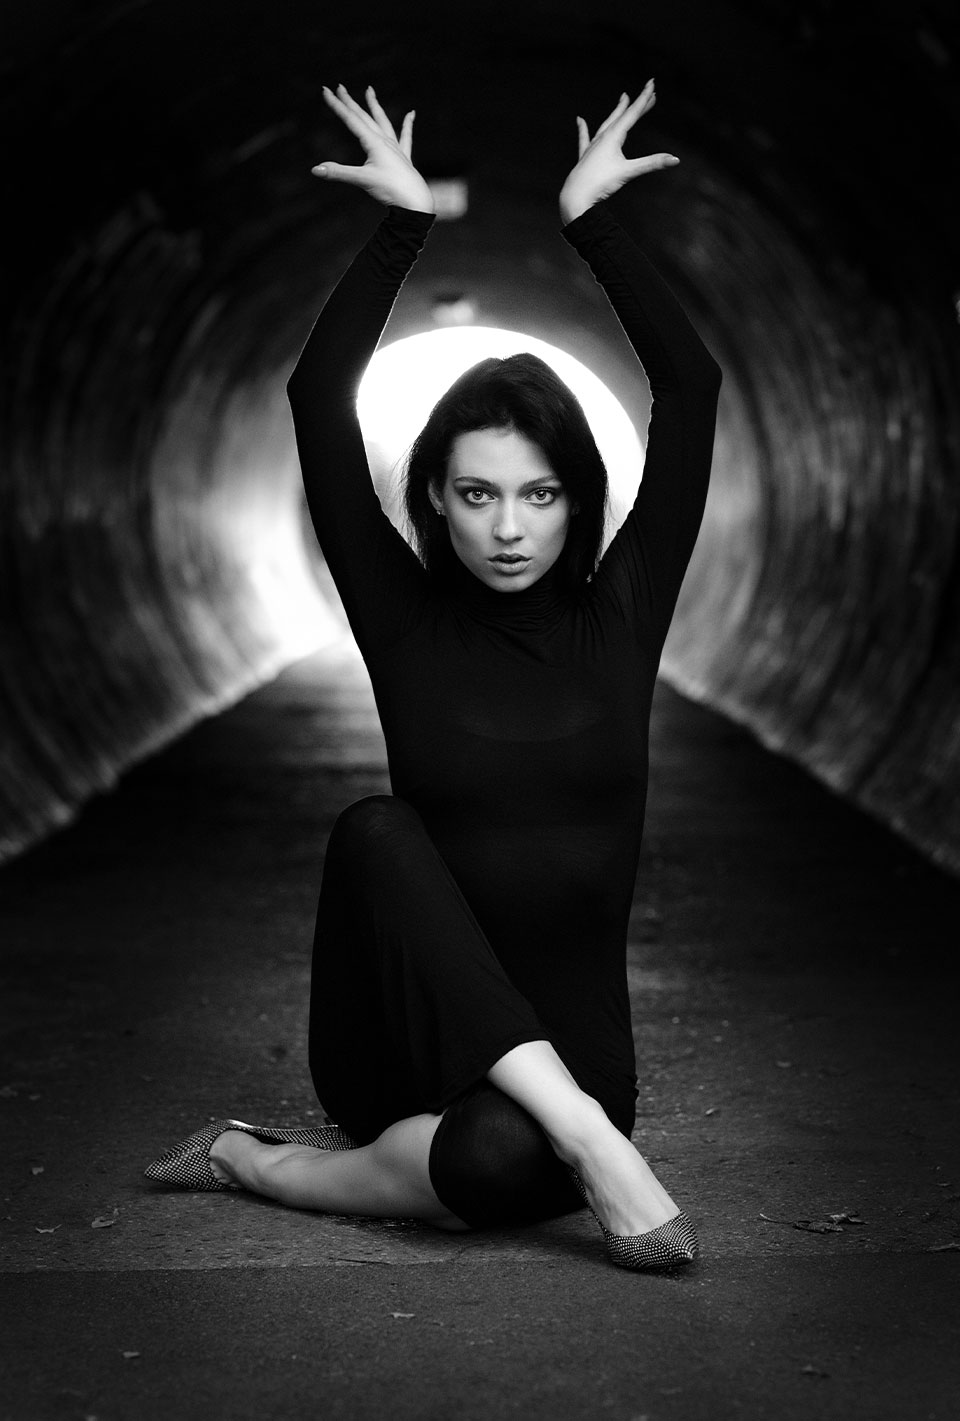 Schwarz-weiß Foto einer Frau in einem langen schwarzen Kleid, die in einem Tunnel in Tanzpose auf dem Boden sitzt und die Arme nach oben streckt.